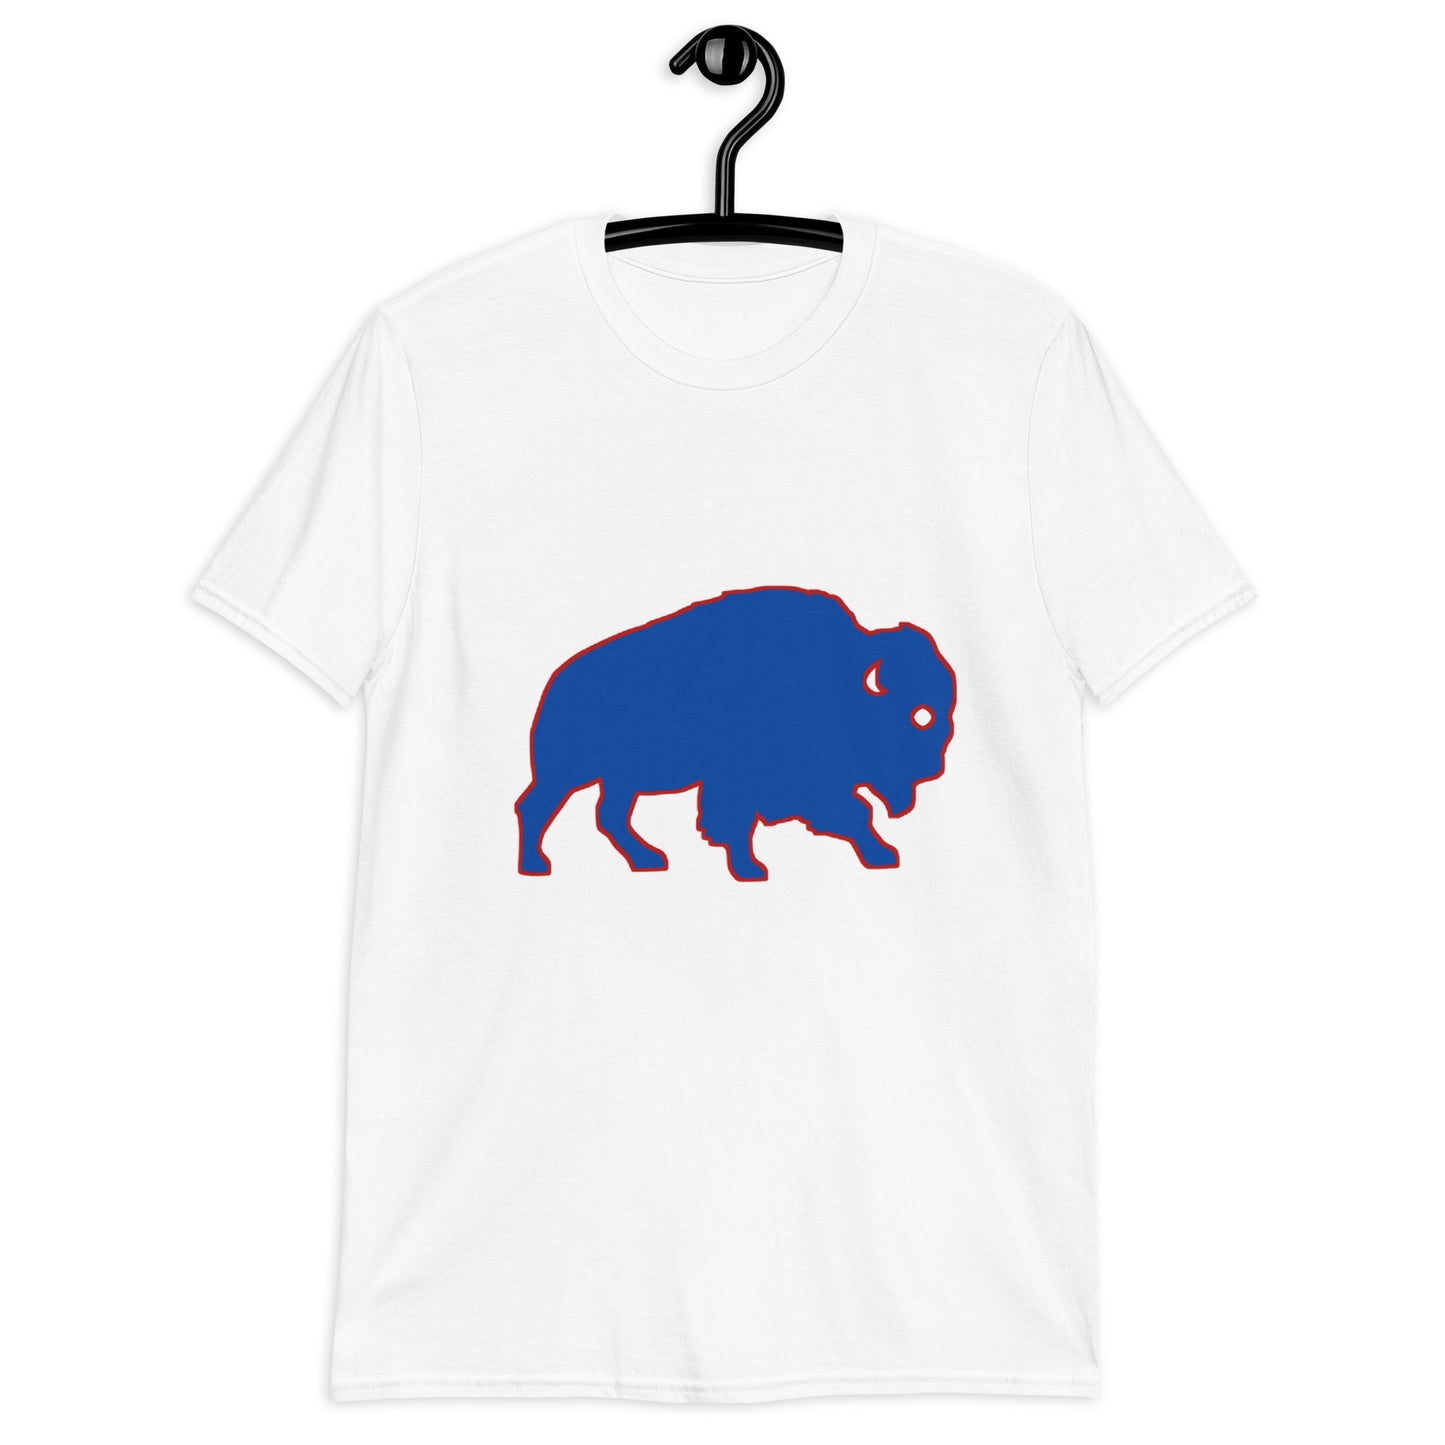 Buffalo Bills T-shirt / Buffalo T-shirt / Buffalo Bills 3 T-shirt